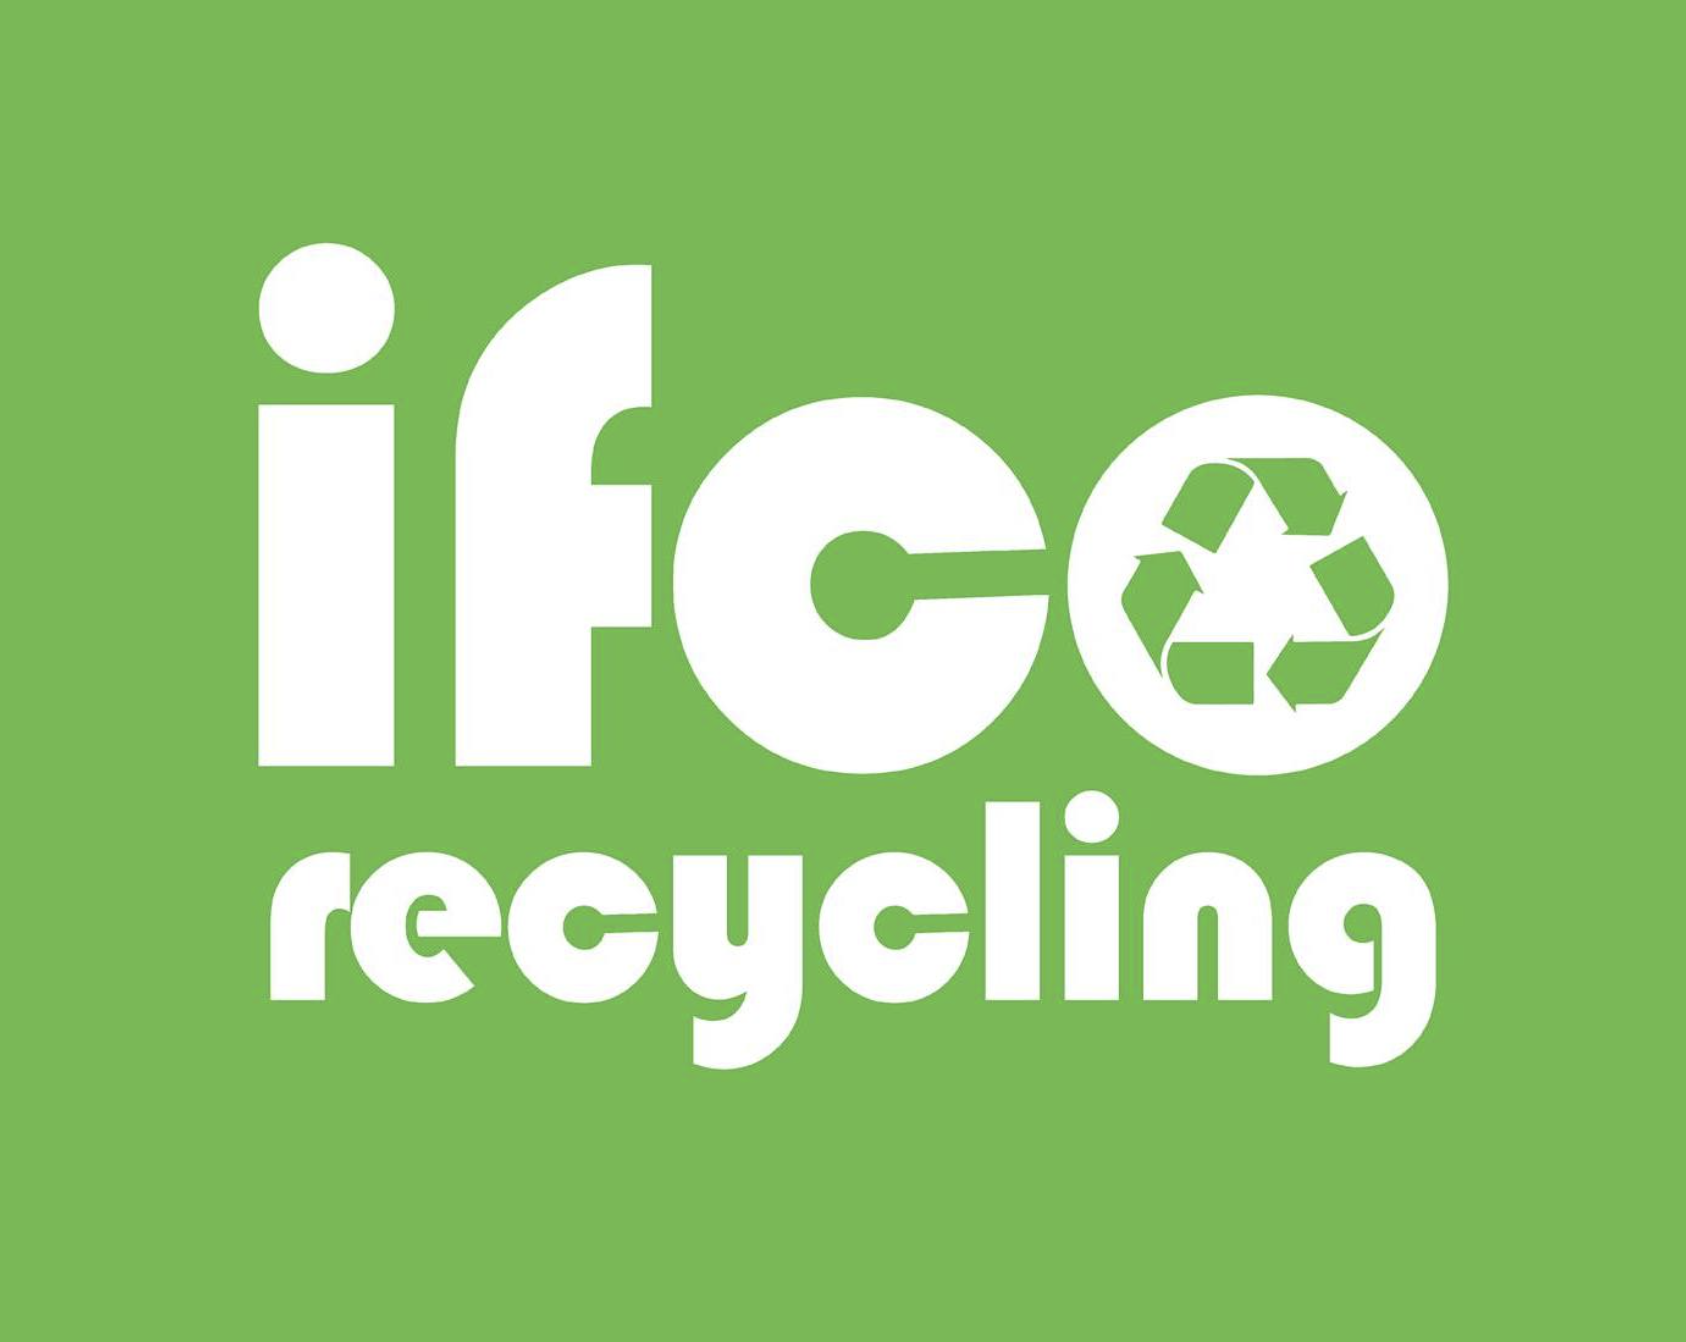 IFCO.logo